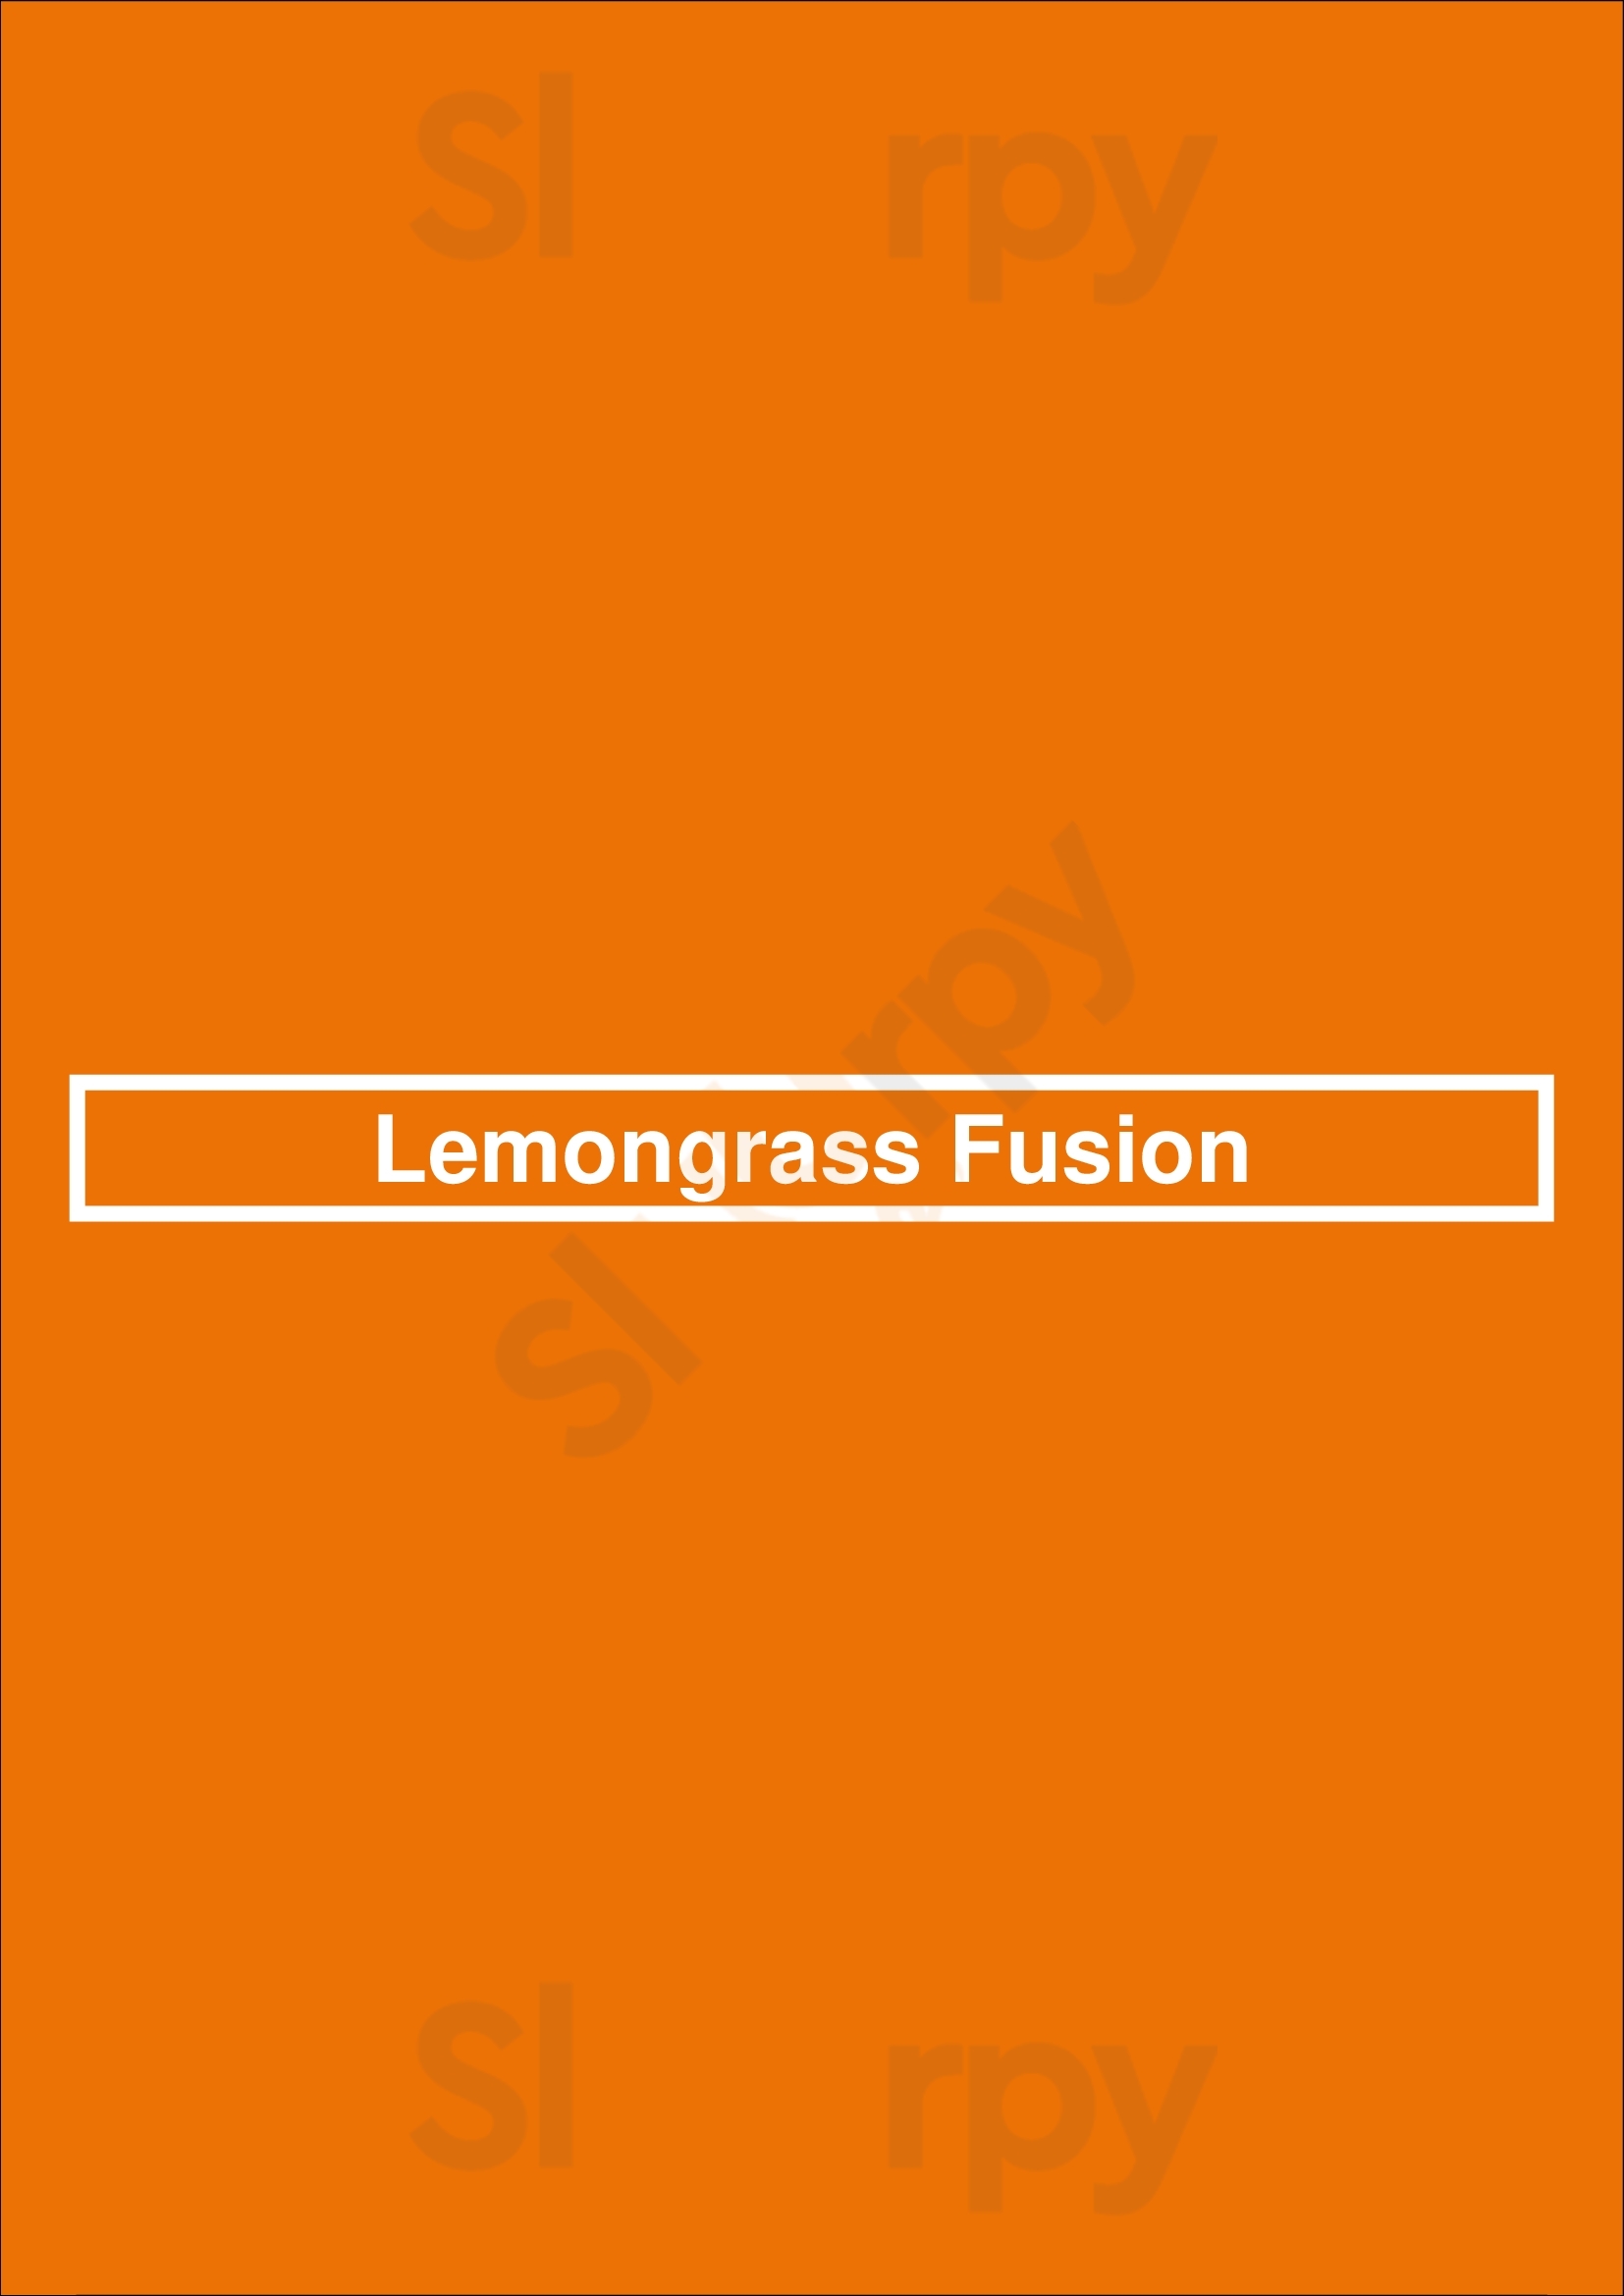 Lemongrass Fusion Naas Menu - 1